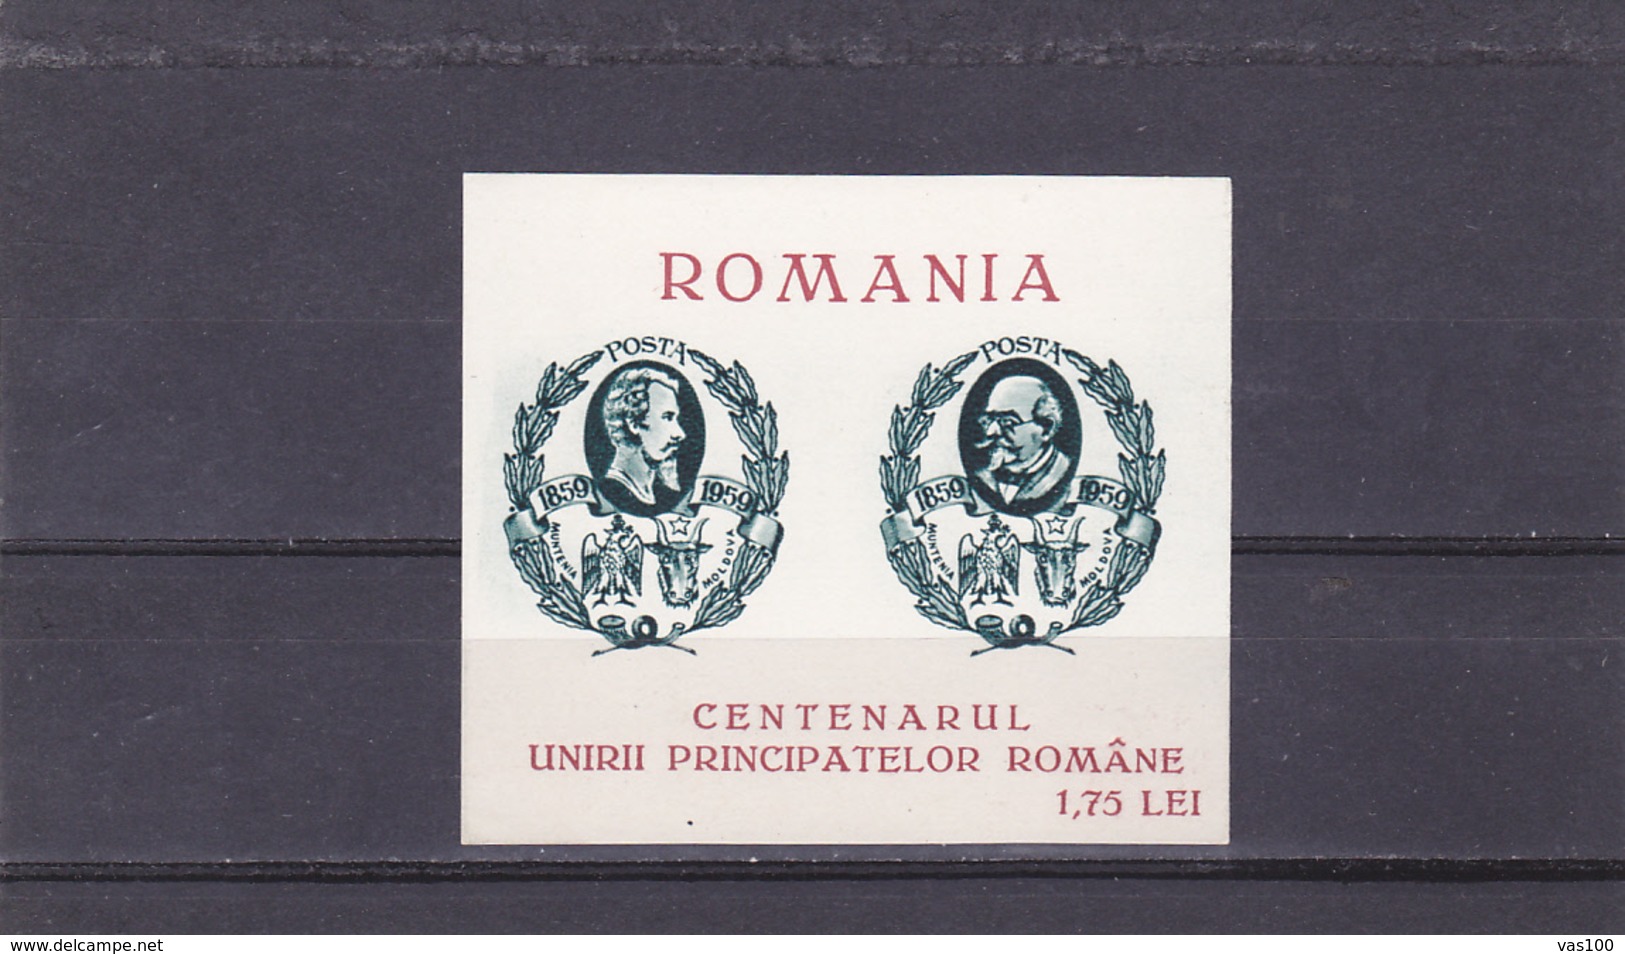 SPAIN - EXILE CENTENARUL UNIRII PRINCIPATELOR ROMANE,1959 BLOCK MNH,ROMANIA. - Lokale Uitgaven